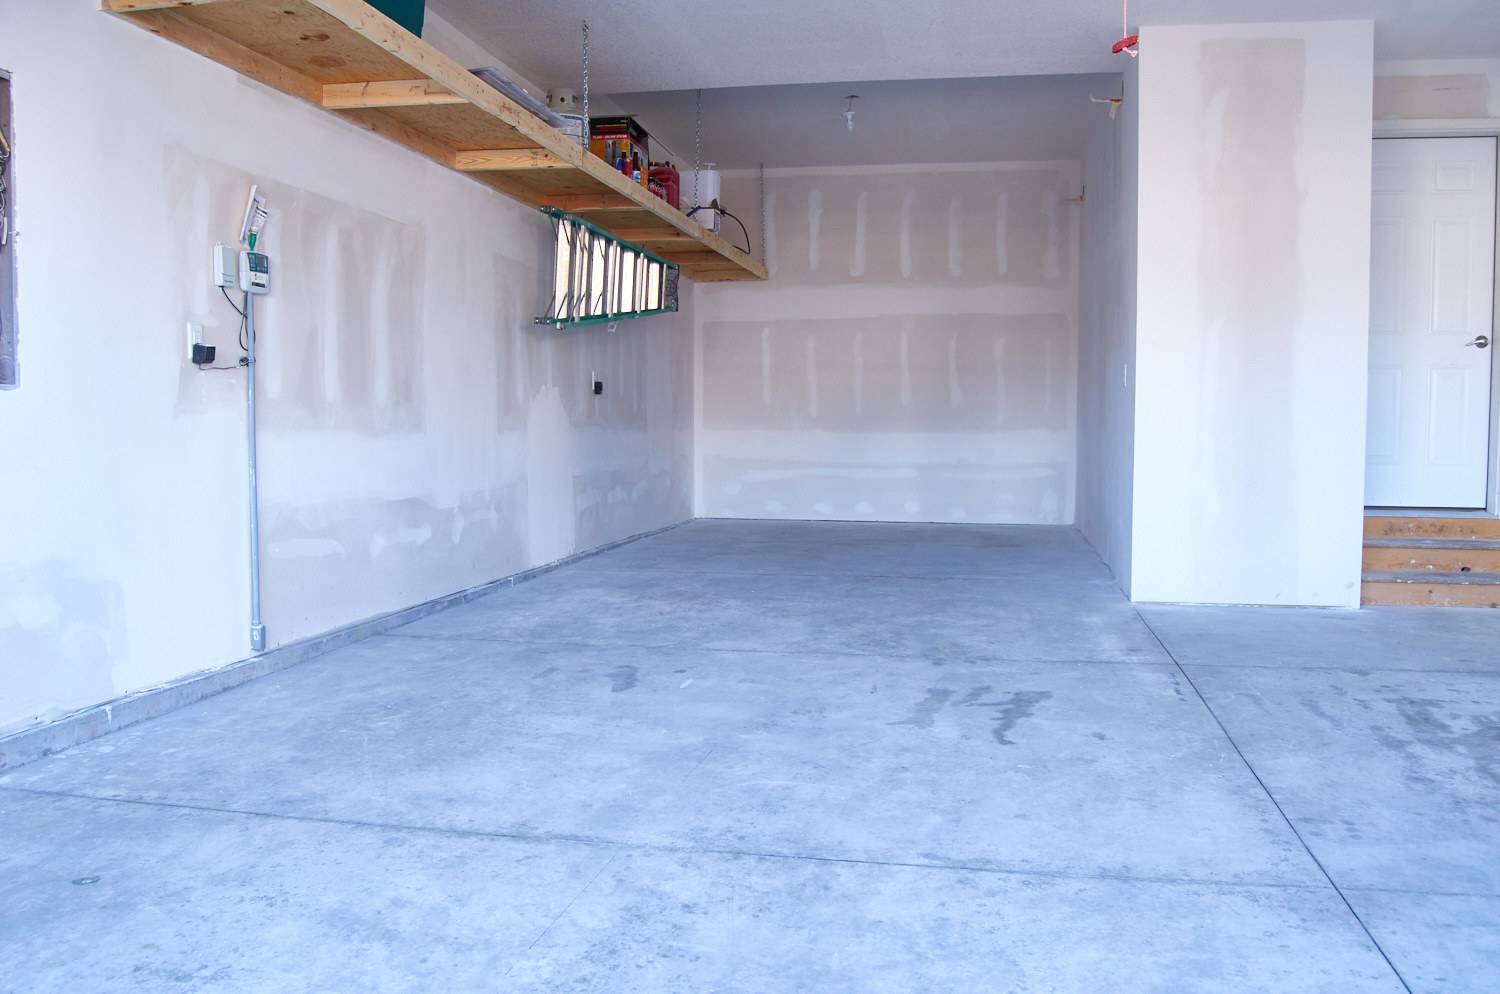 Uncoated garage floor (concrete)